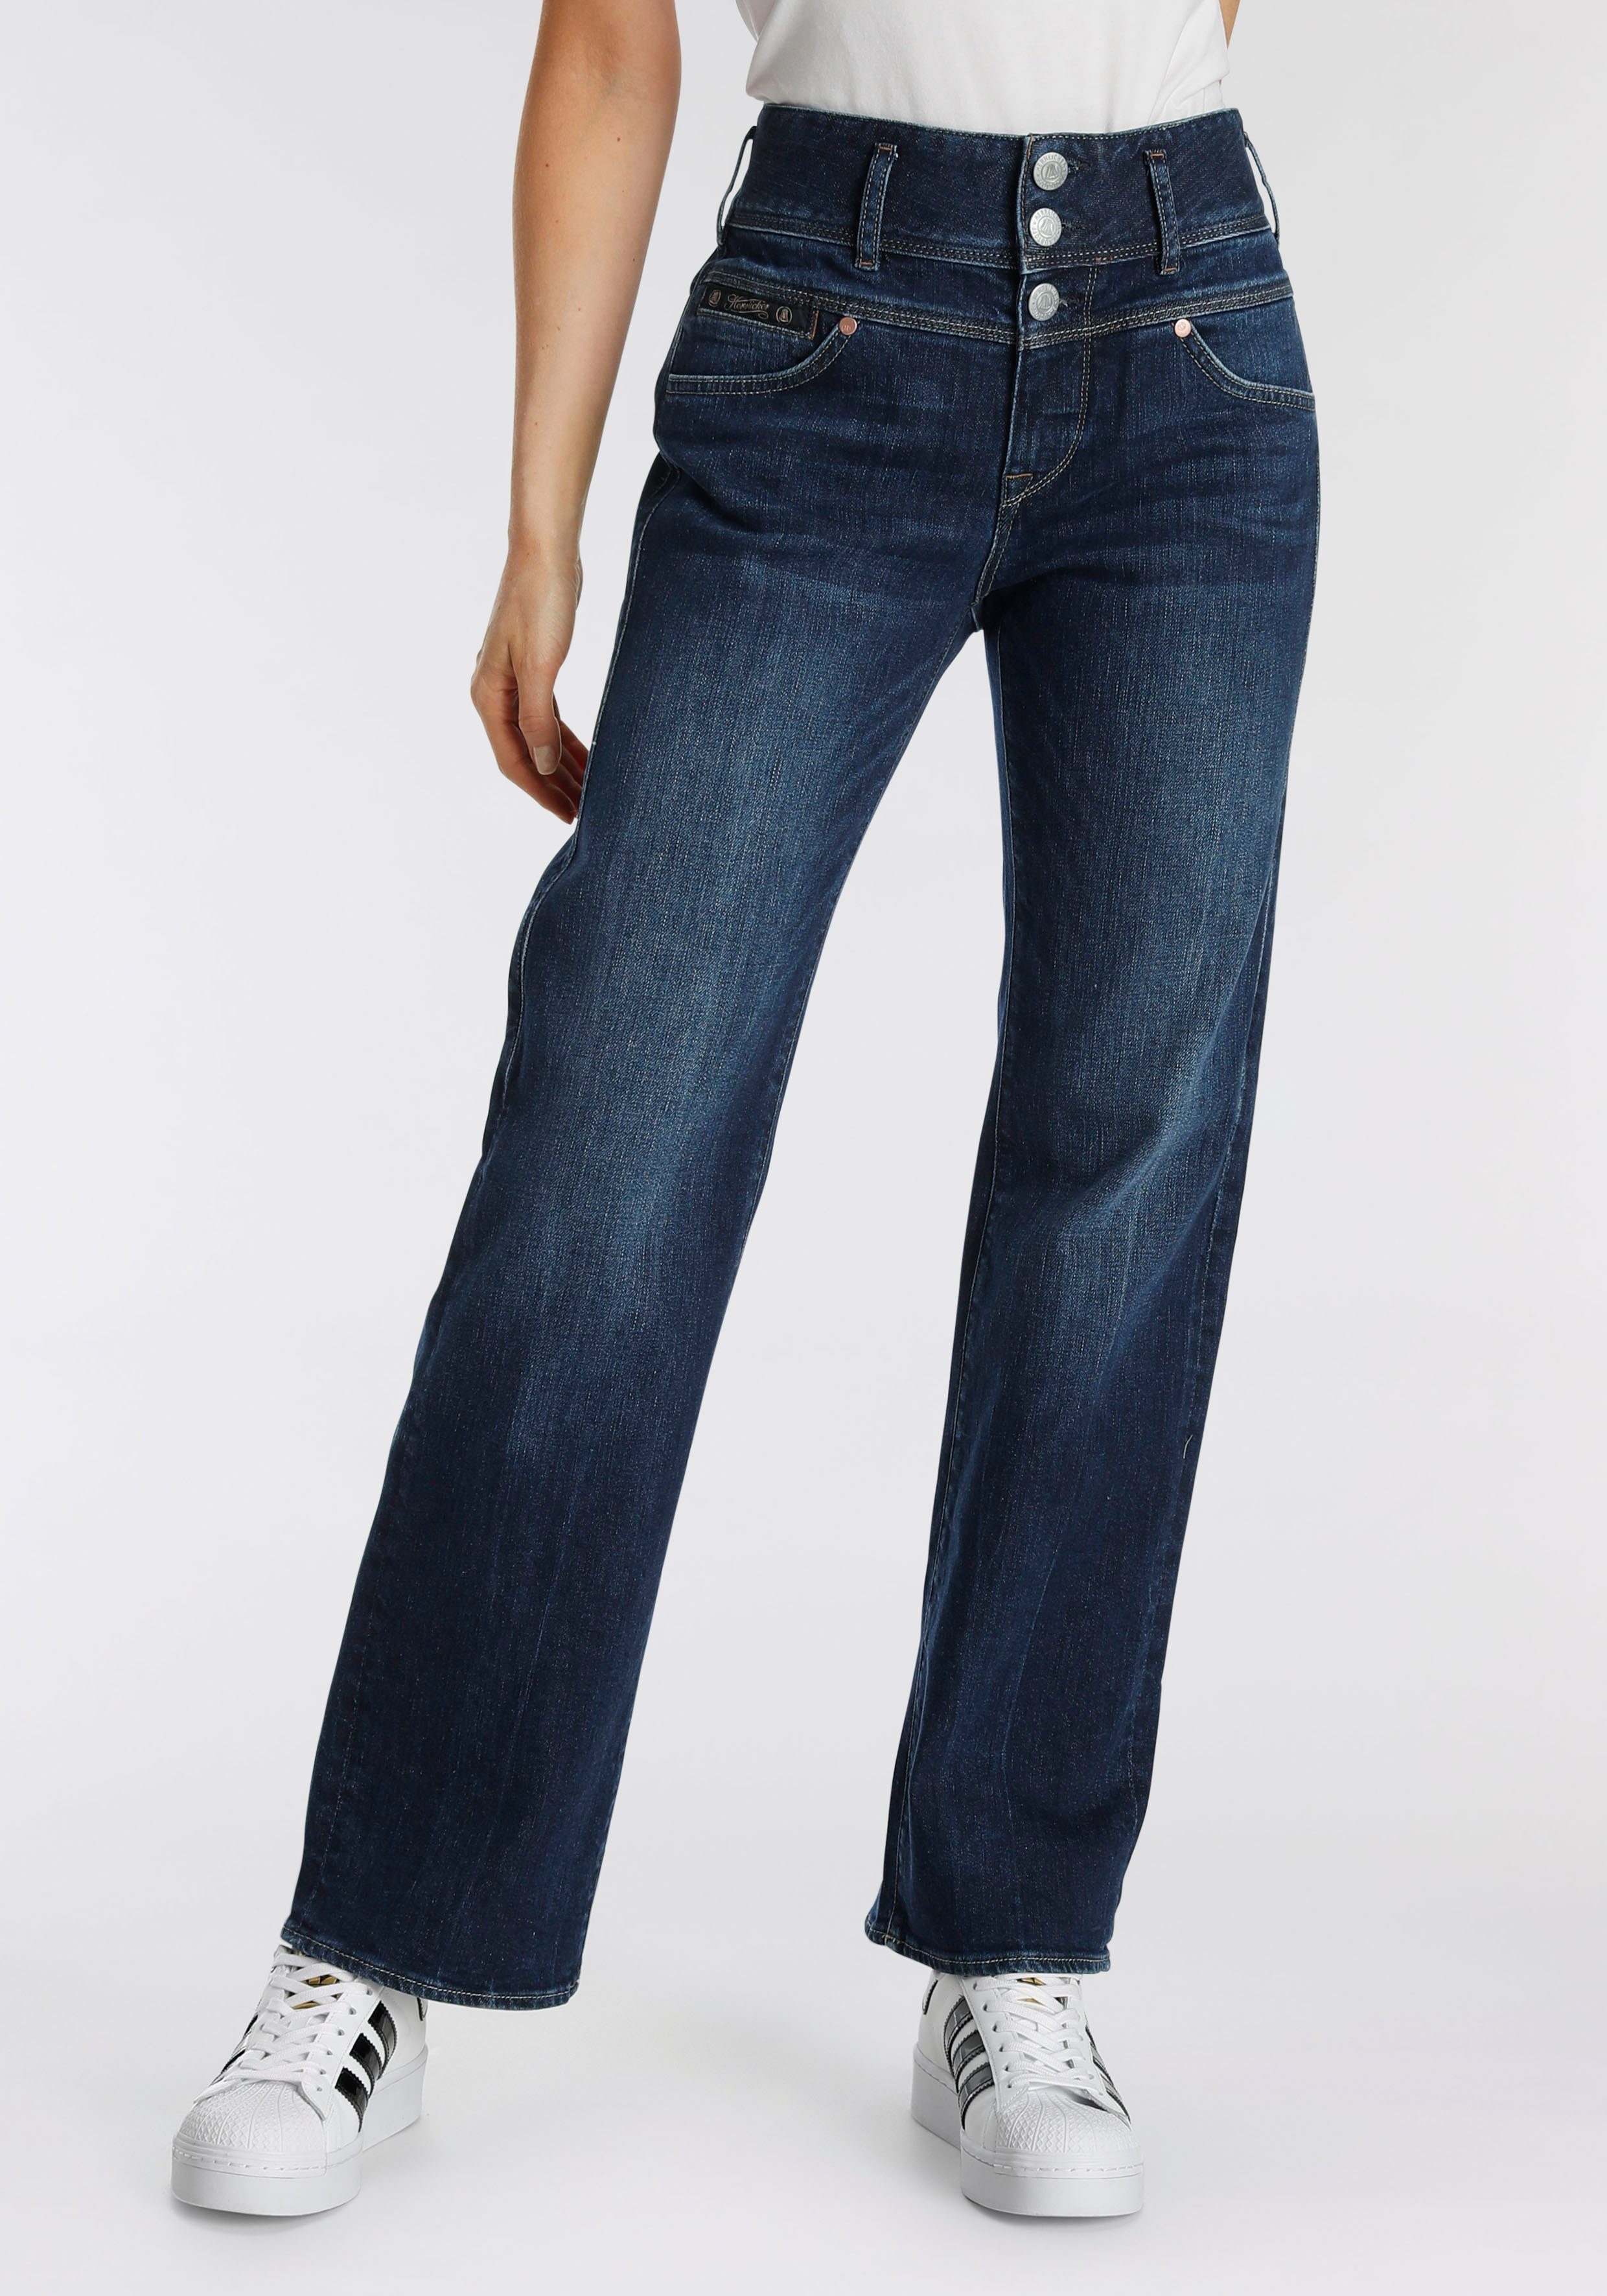 Herrlicher Straight-Jeans RAYA mit Gerade Optik streckende seitlichen eine Herrlicher von Keileinsätzen cleaner Wirkung, in Jeans für \